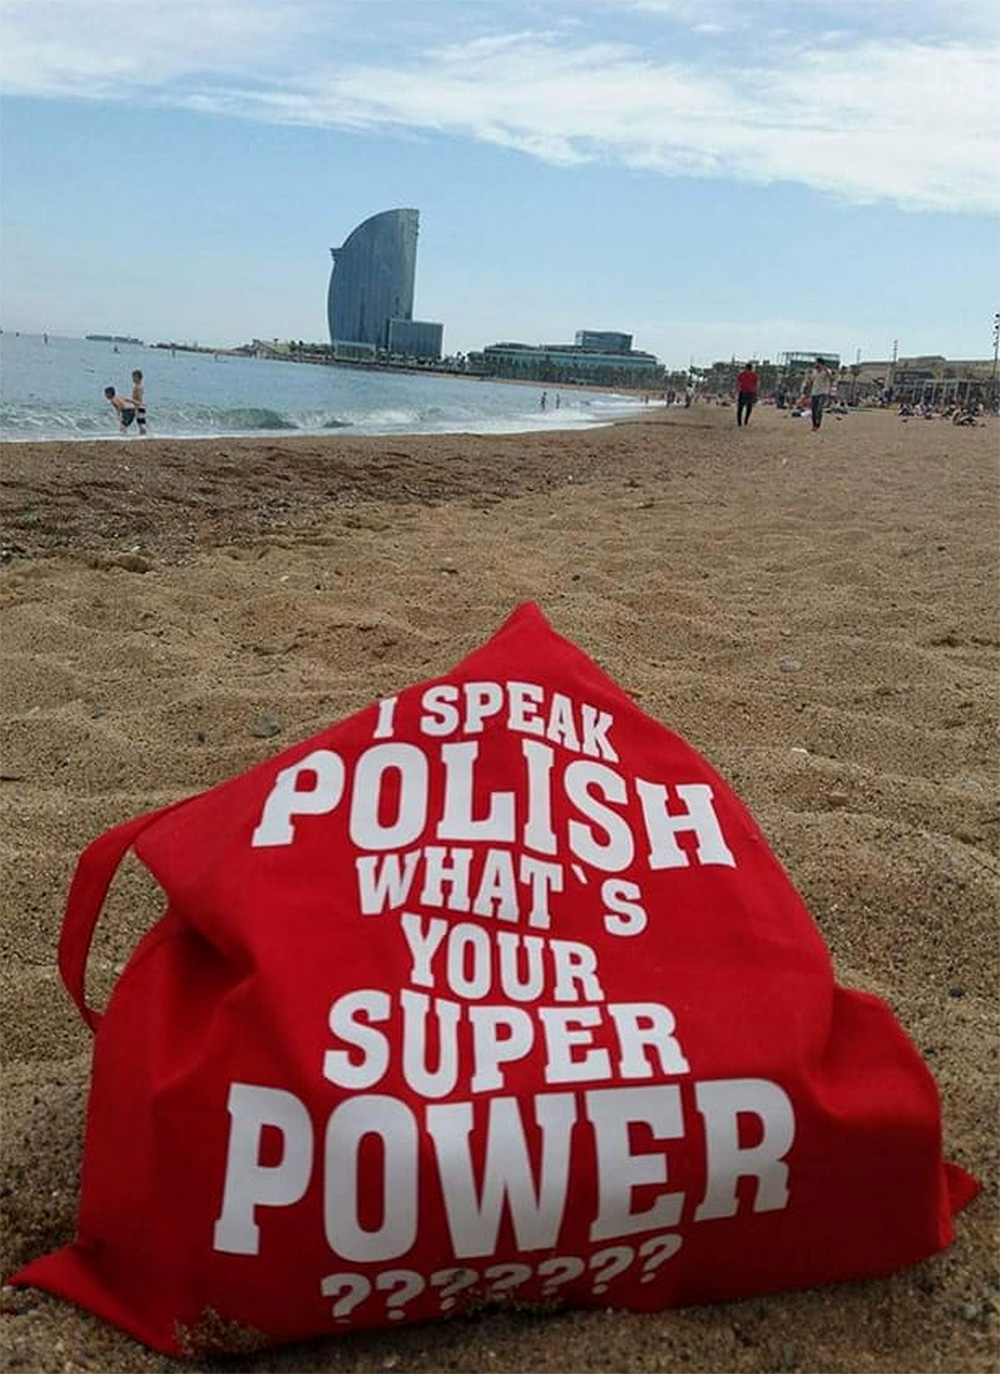 I speak polish what is your super power torba klientki w barcelonie